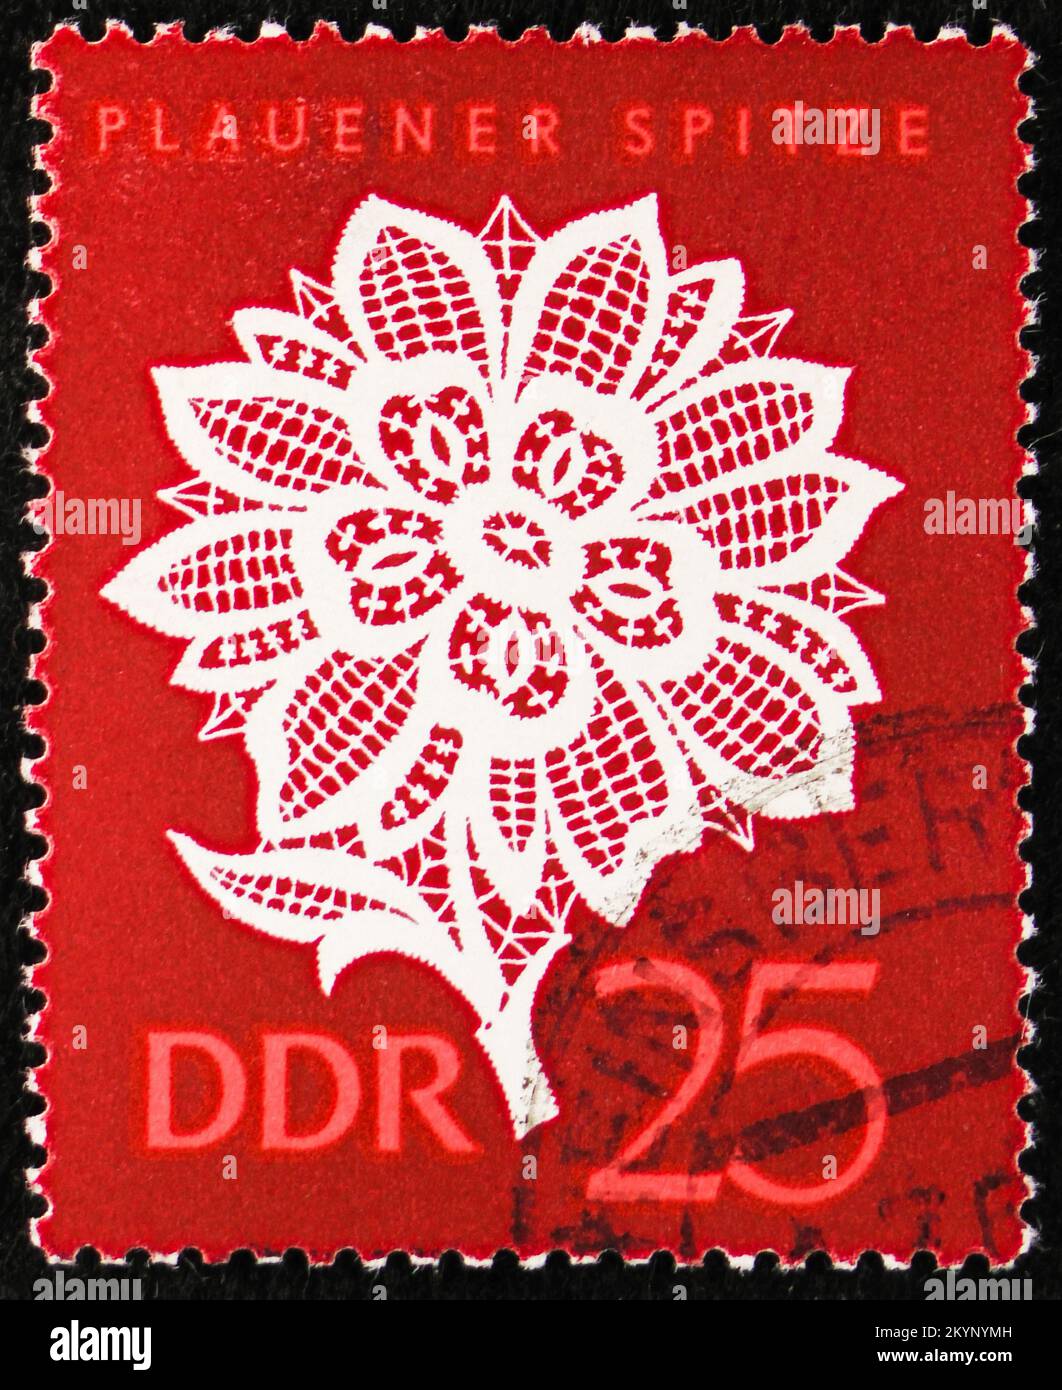 MOSCOU, RUSSIE - 29 OCTOBRE 2022 : le timbre-poste imprimé en Allemagne montre Plauener Spitze, série de point Plauener, vers 1966 Banque D'Images